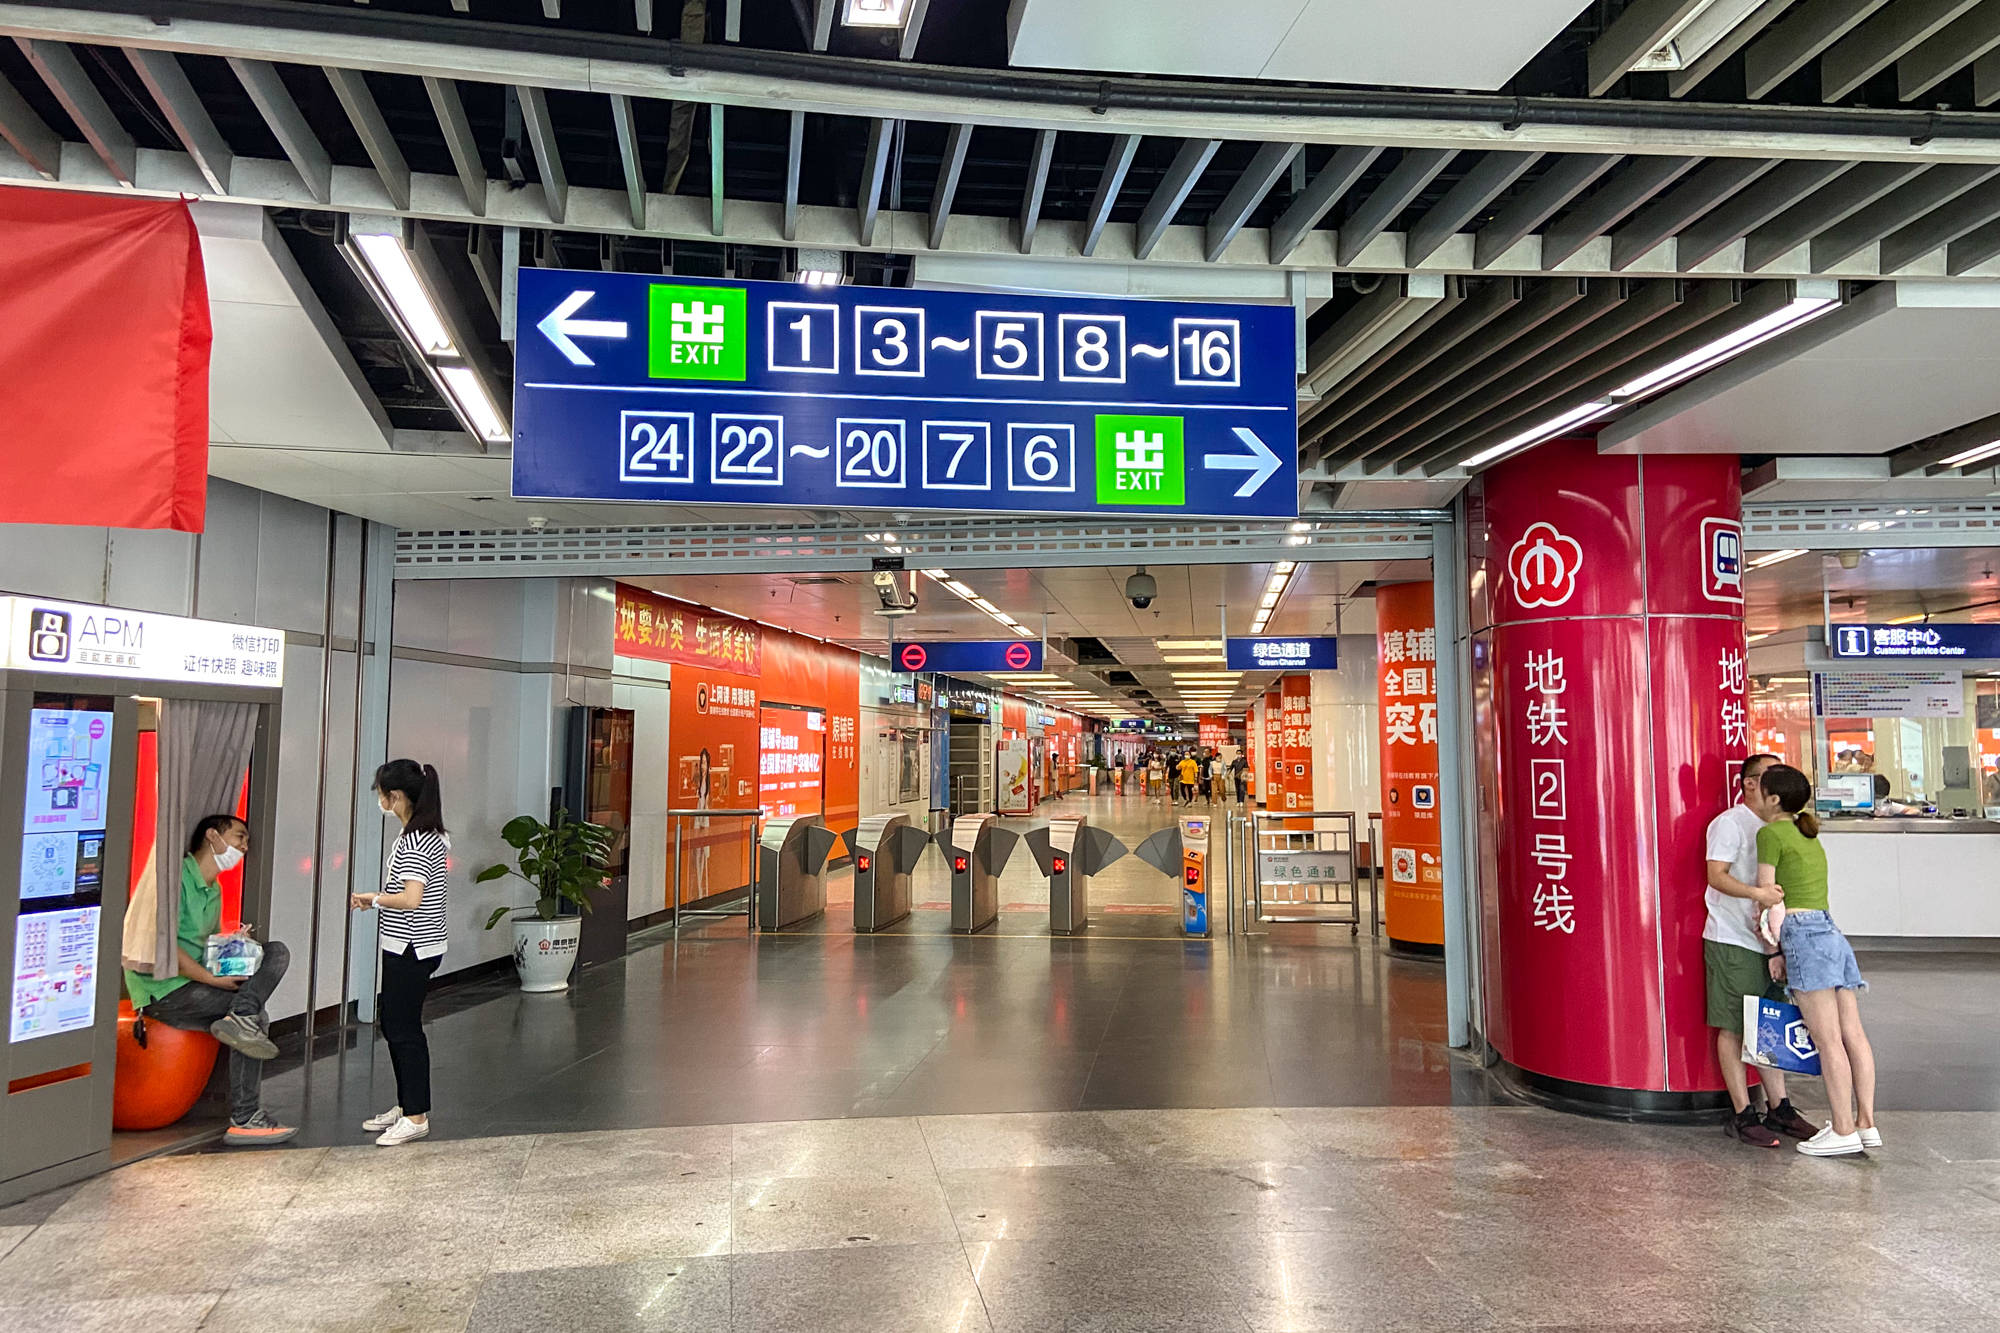 原创实拍南京新街口地铁站建筑面积765万平方米拥有24个出入口